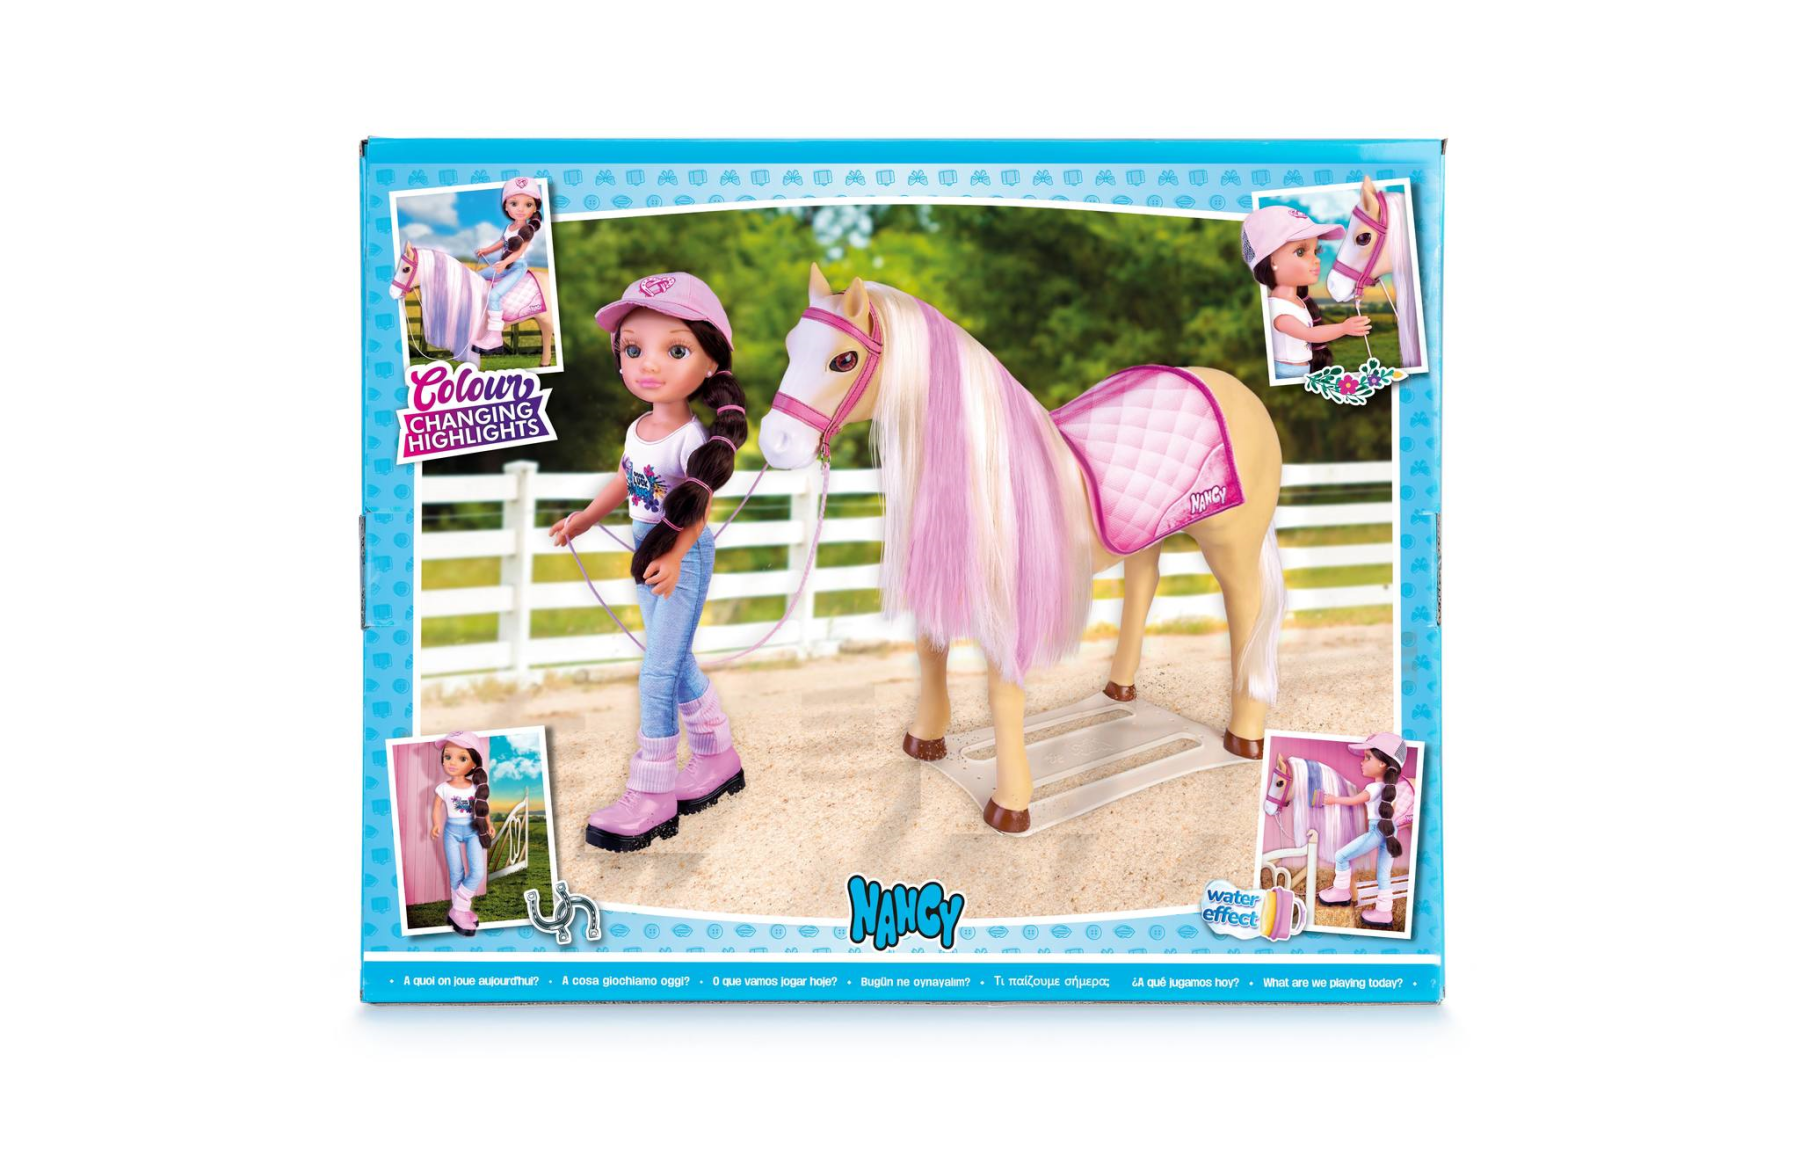 Nancy un giorno il suo cavallo, bambola nancy con cavallo e accessori; - NANCY